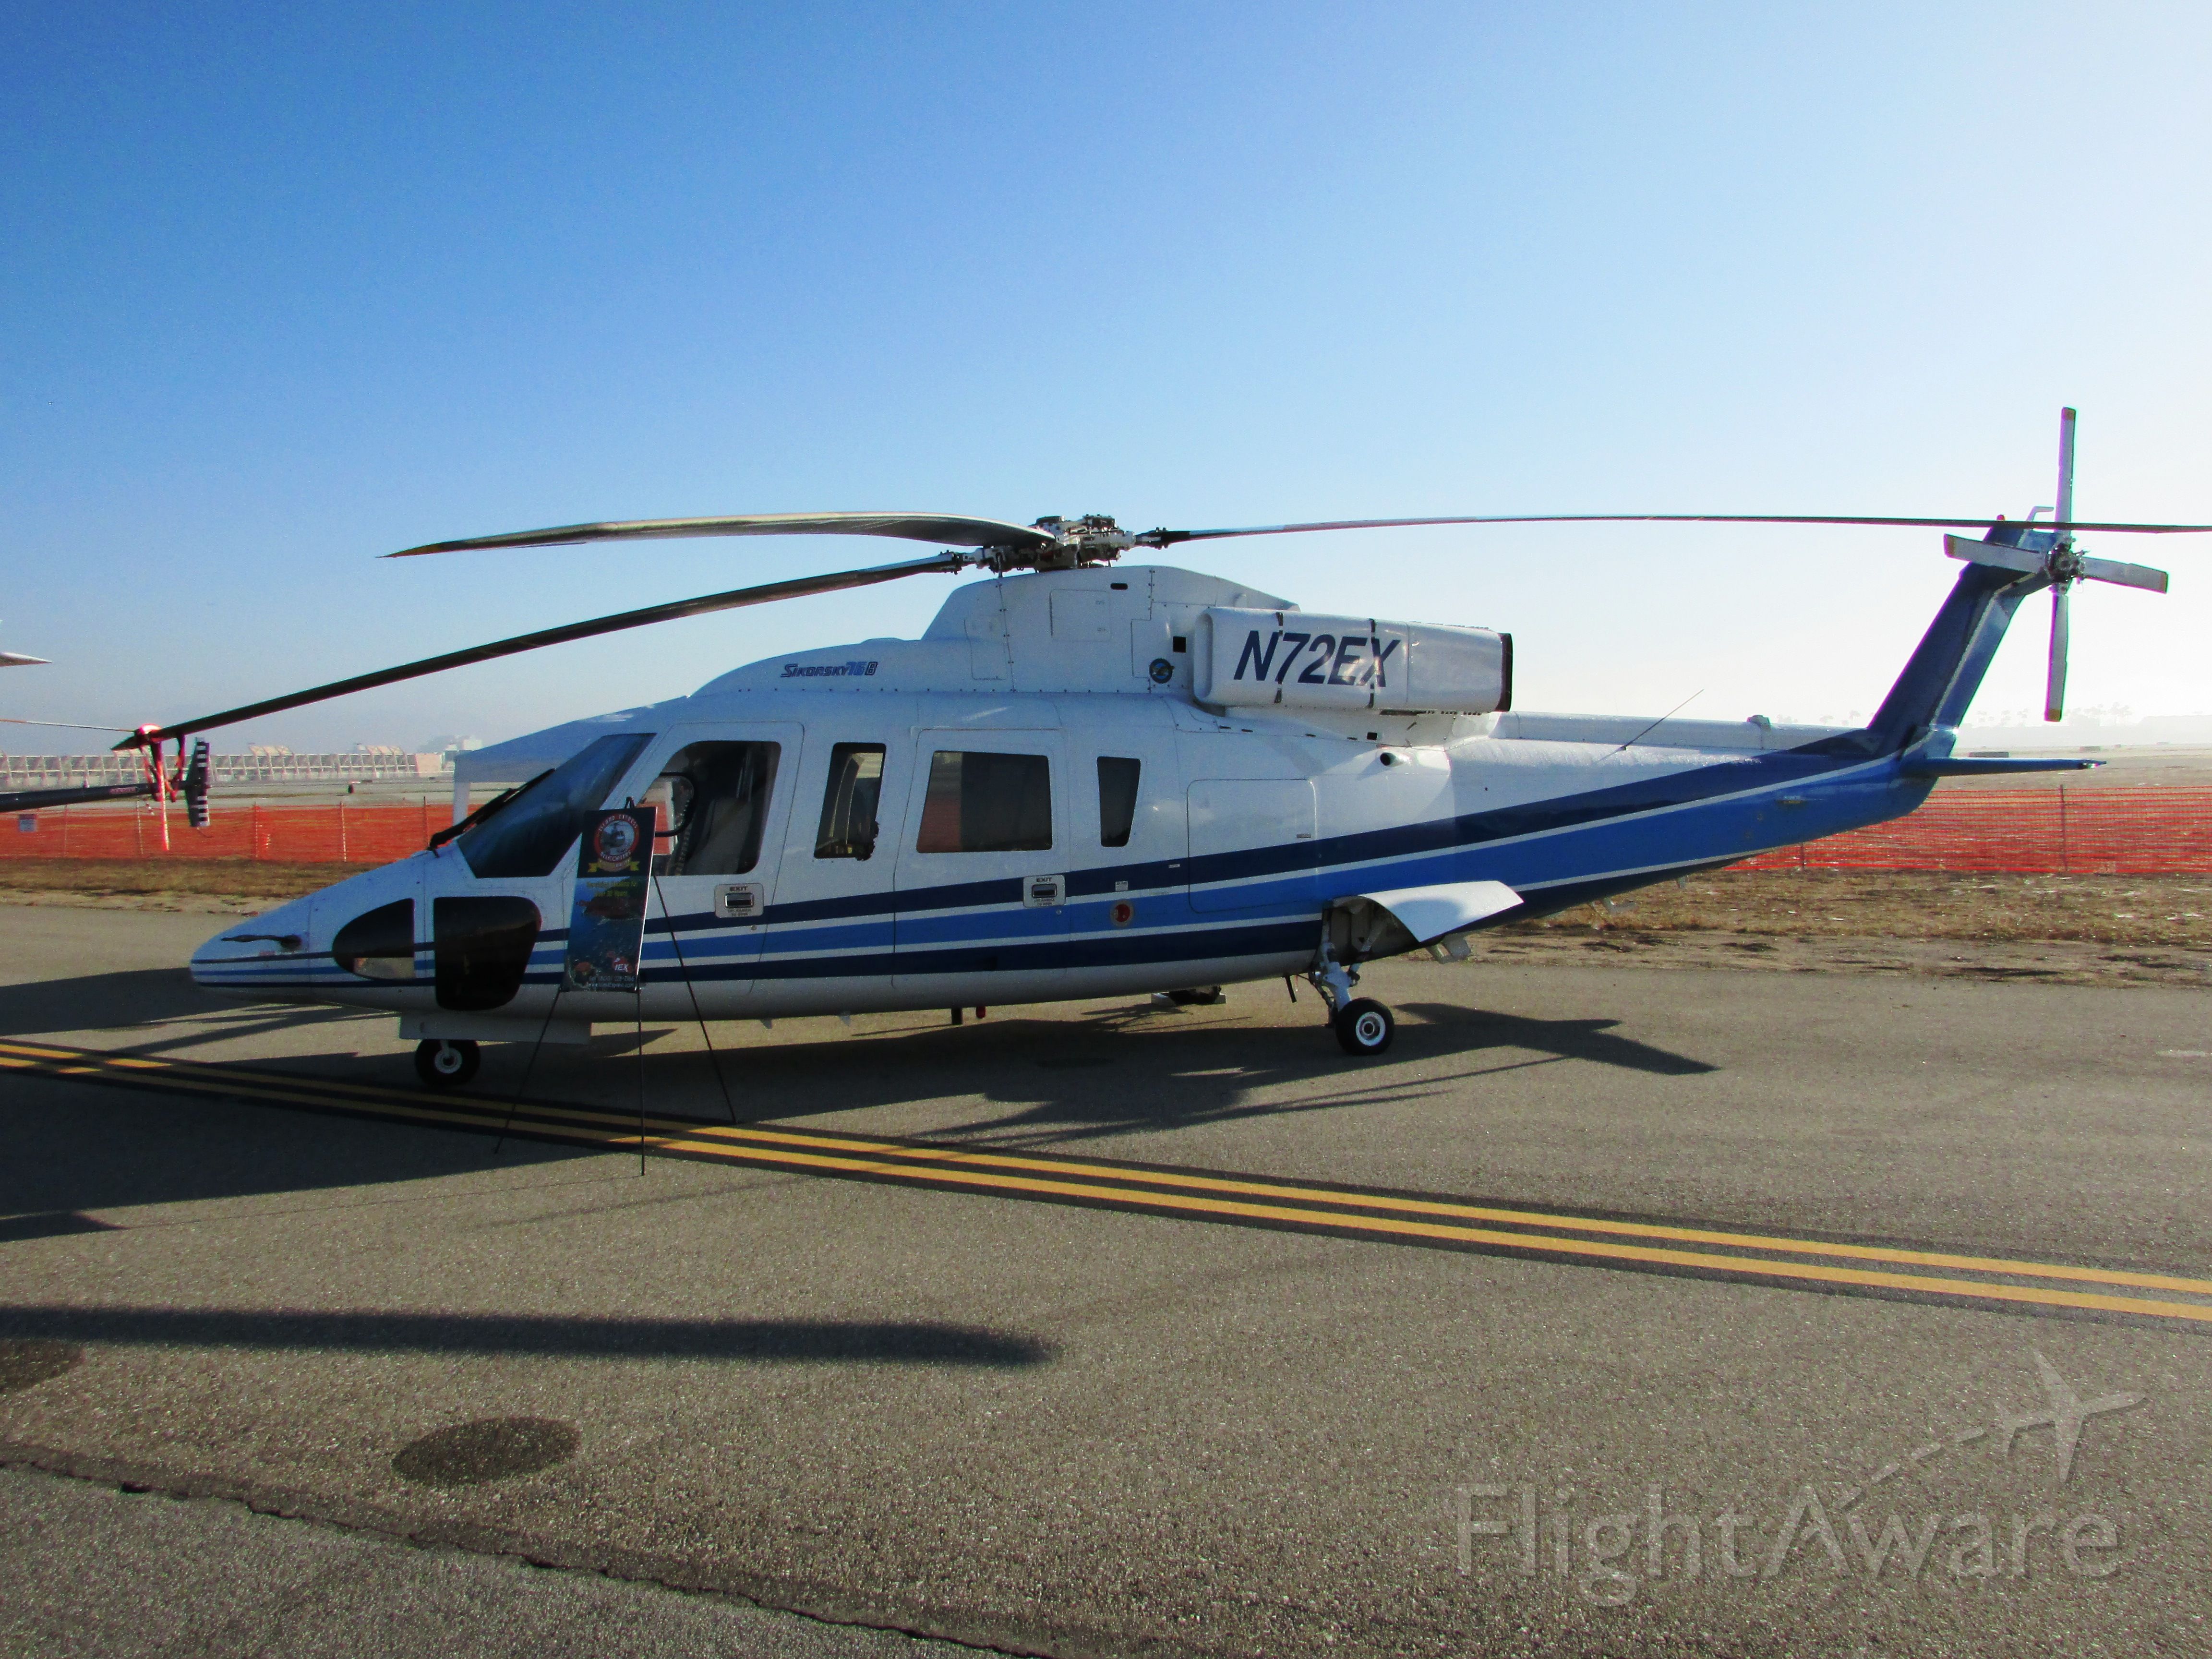 Sikorsky S-76 (N72EX) - On display at Long Beach